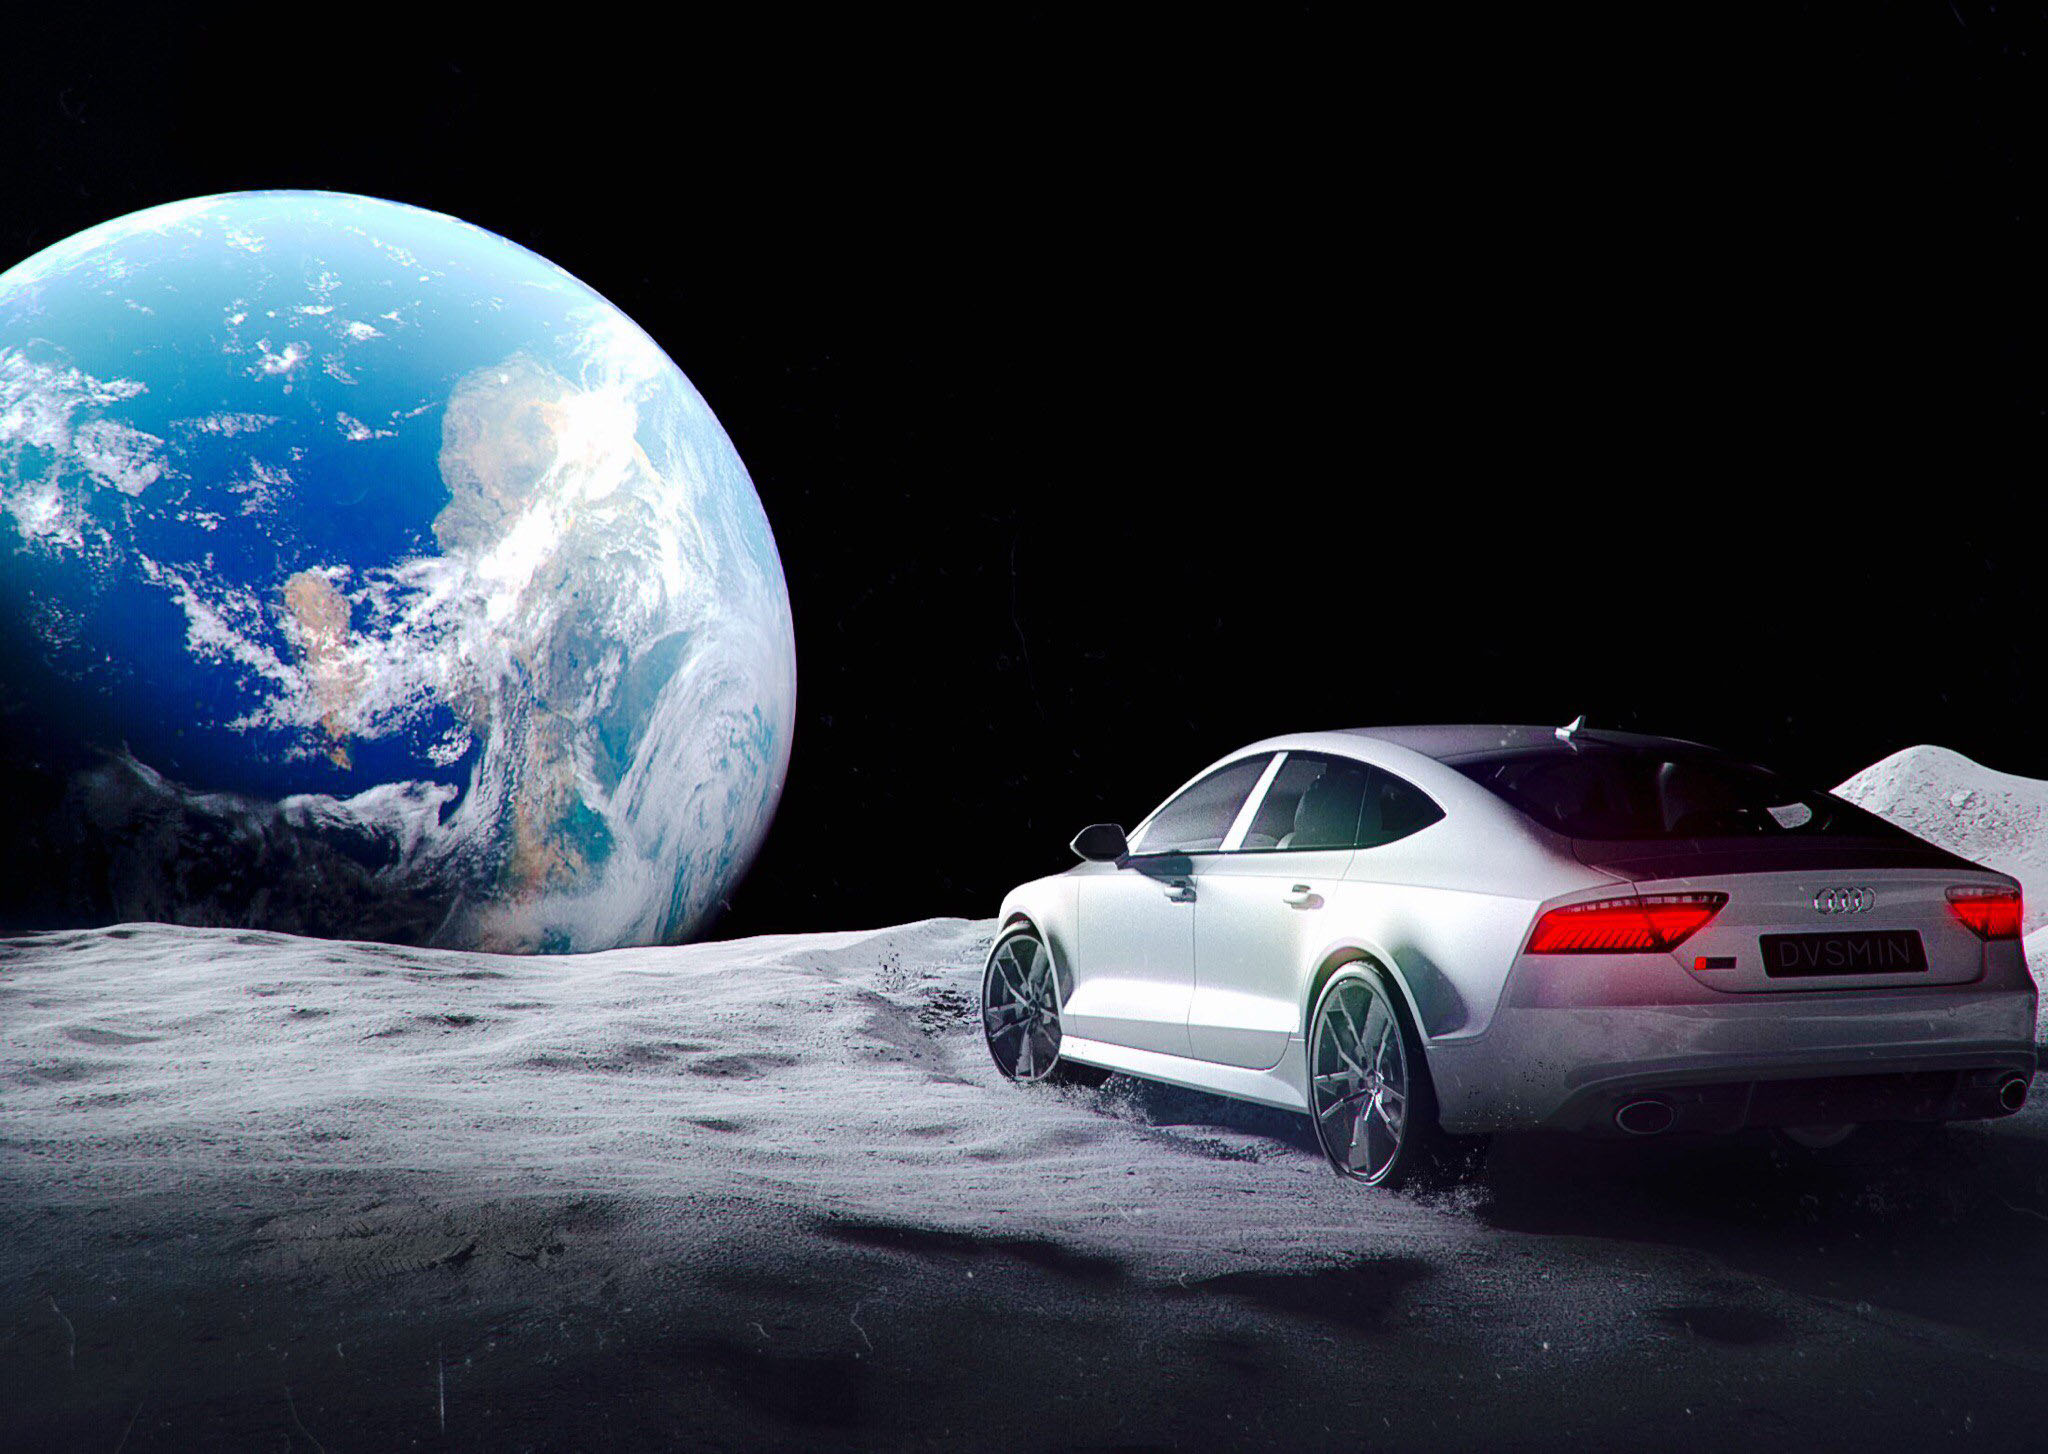 Машина на Луне. Машина на фоне планеты. Автомобиль в космосе. Машина на фоне Луны. Moon cars